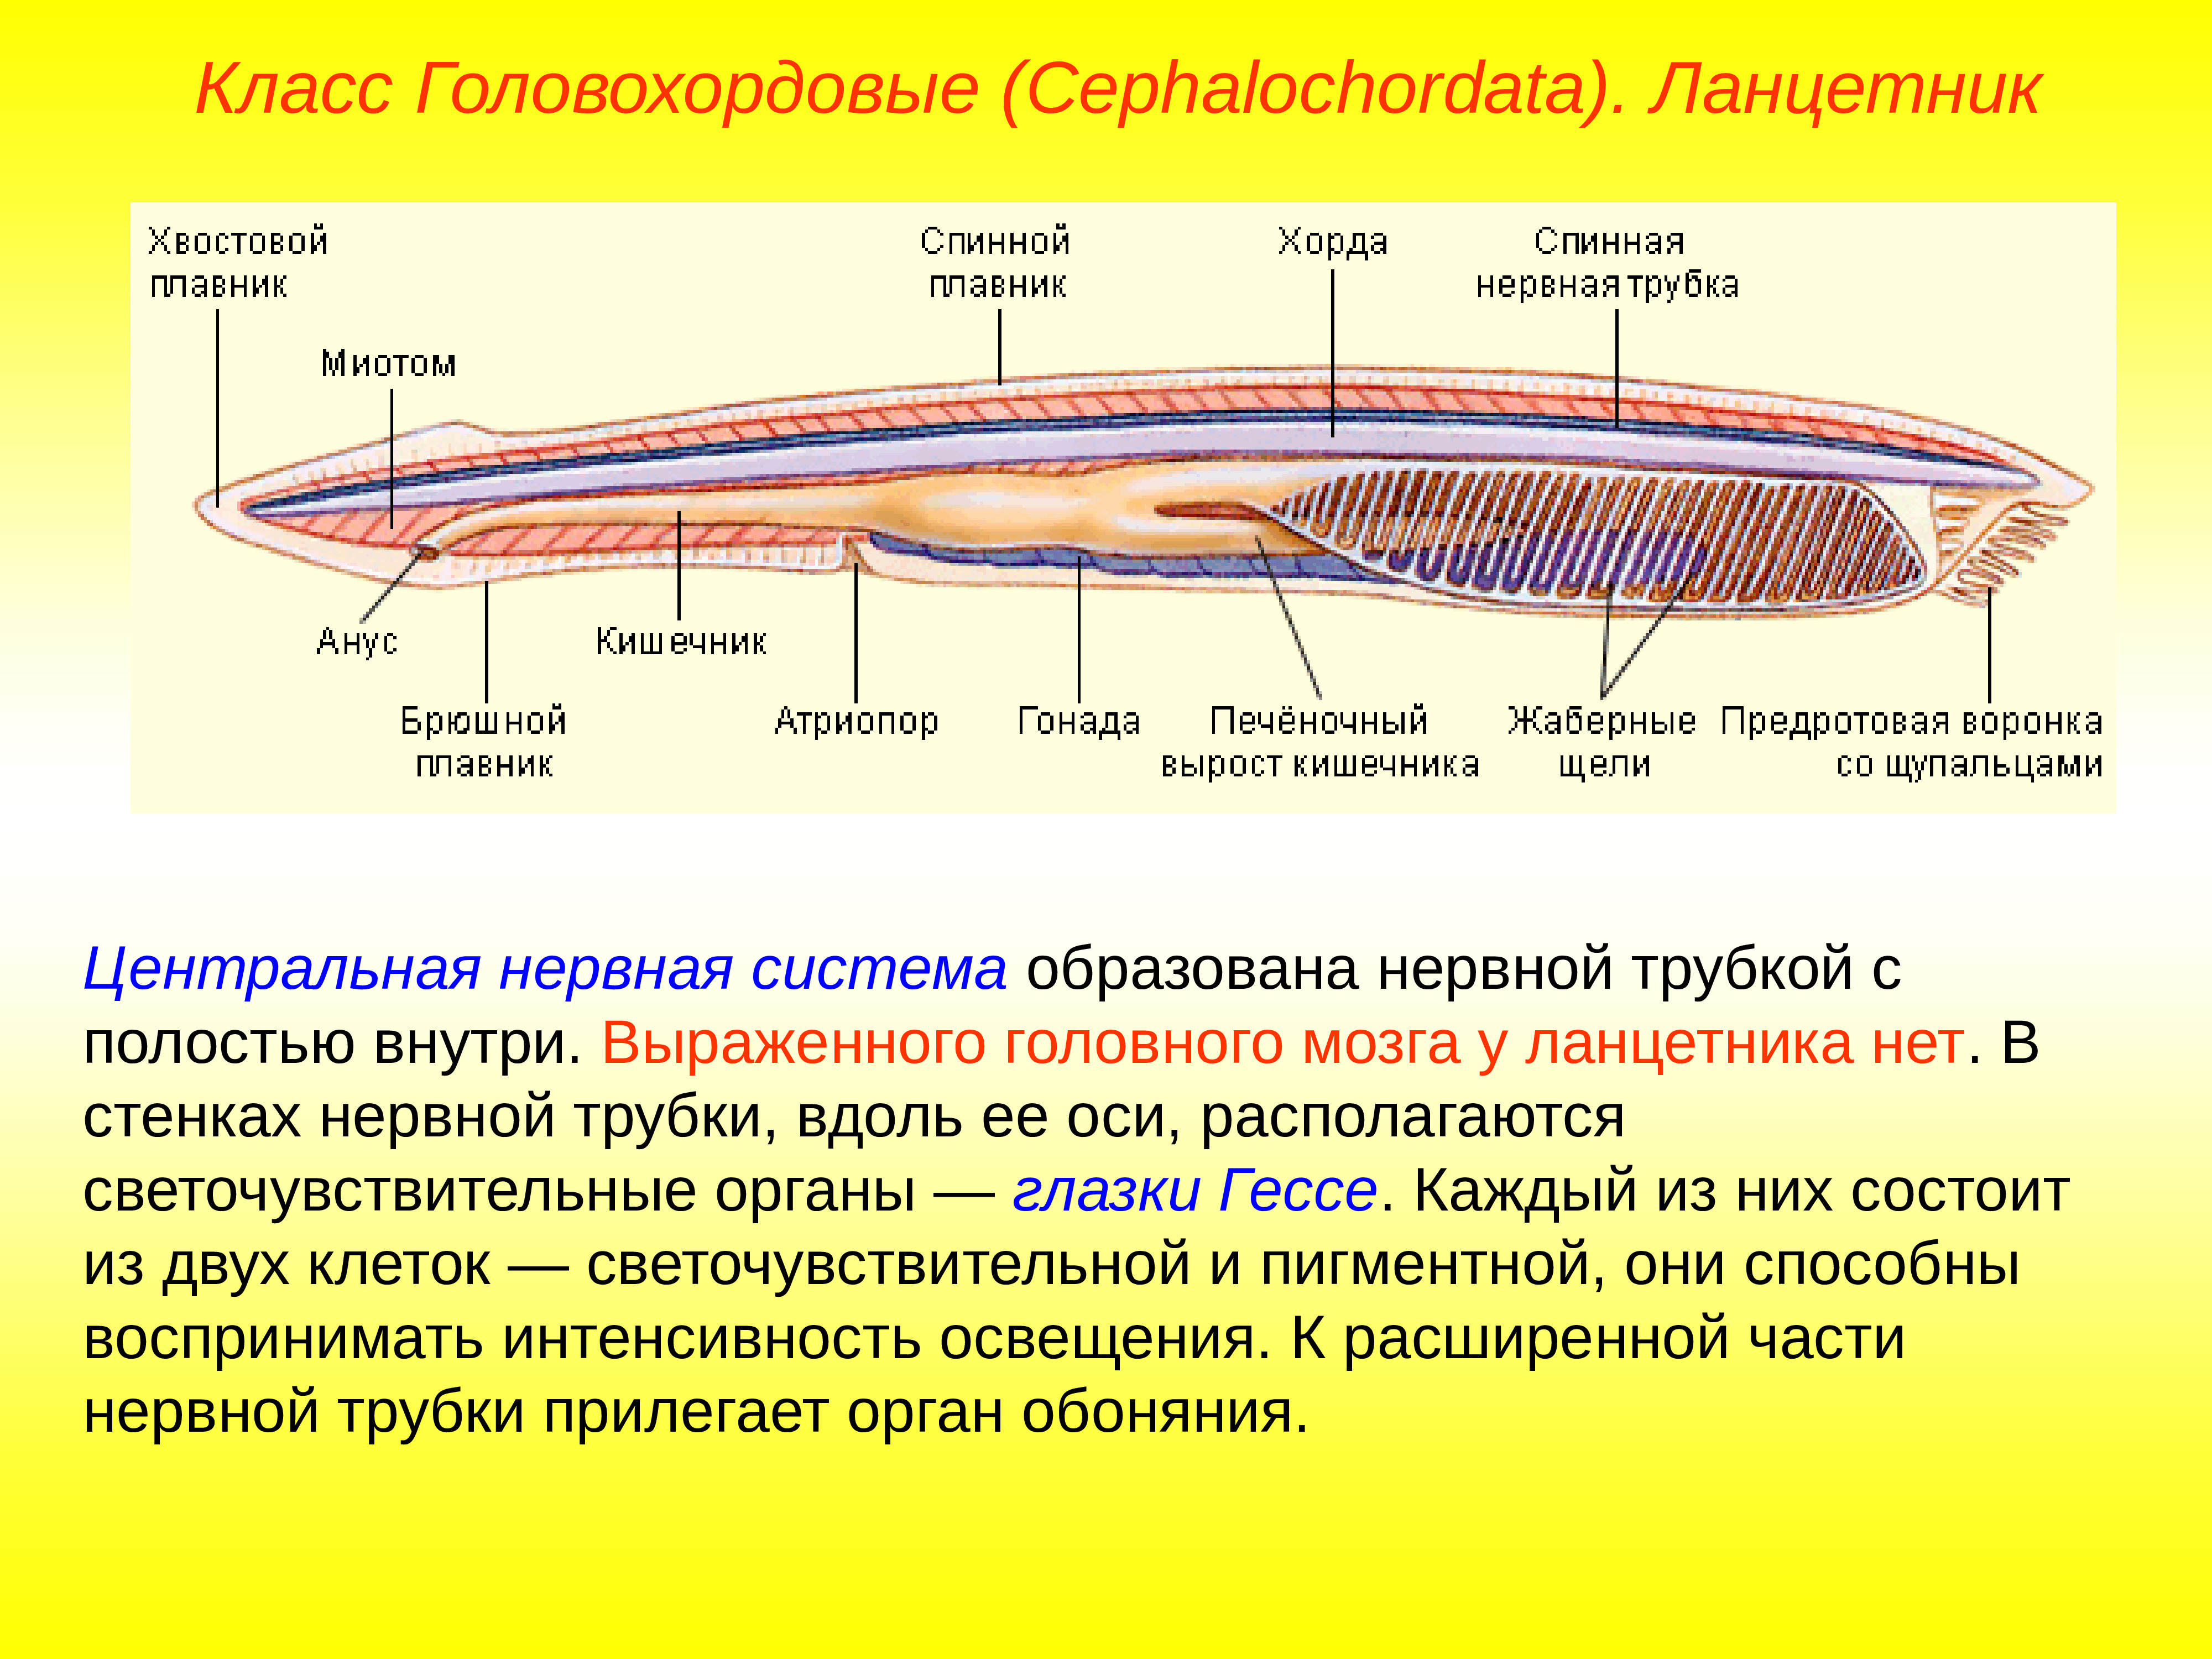 Класс рыбы ланцетники. Трубчатая нервная система ланцетника. Головохордовые пищеварительная система. Нервная система ланцетника. Нервная трубка бесчерепных.